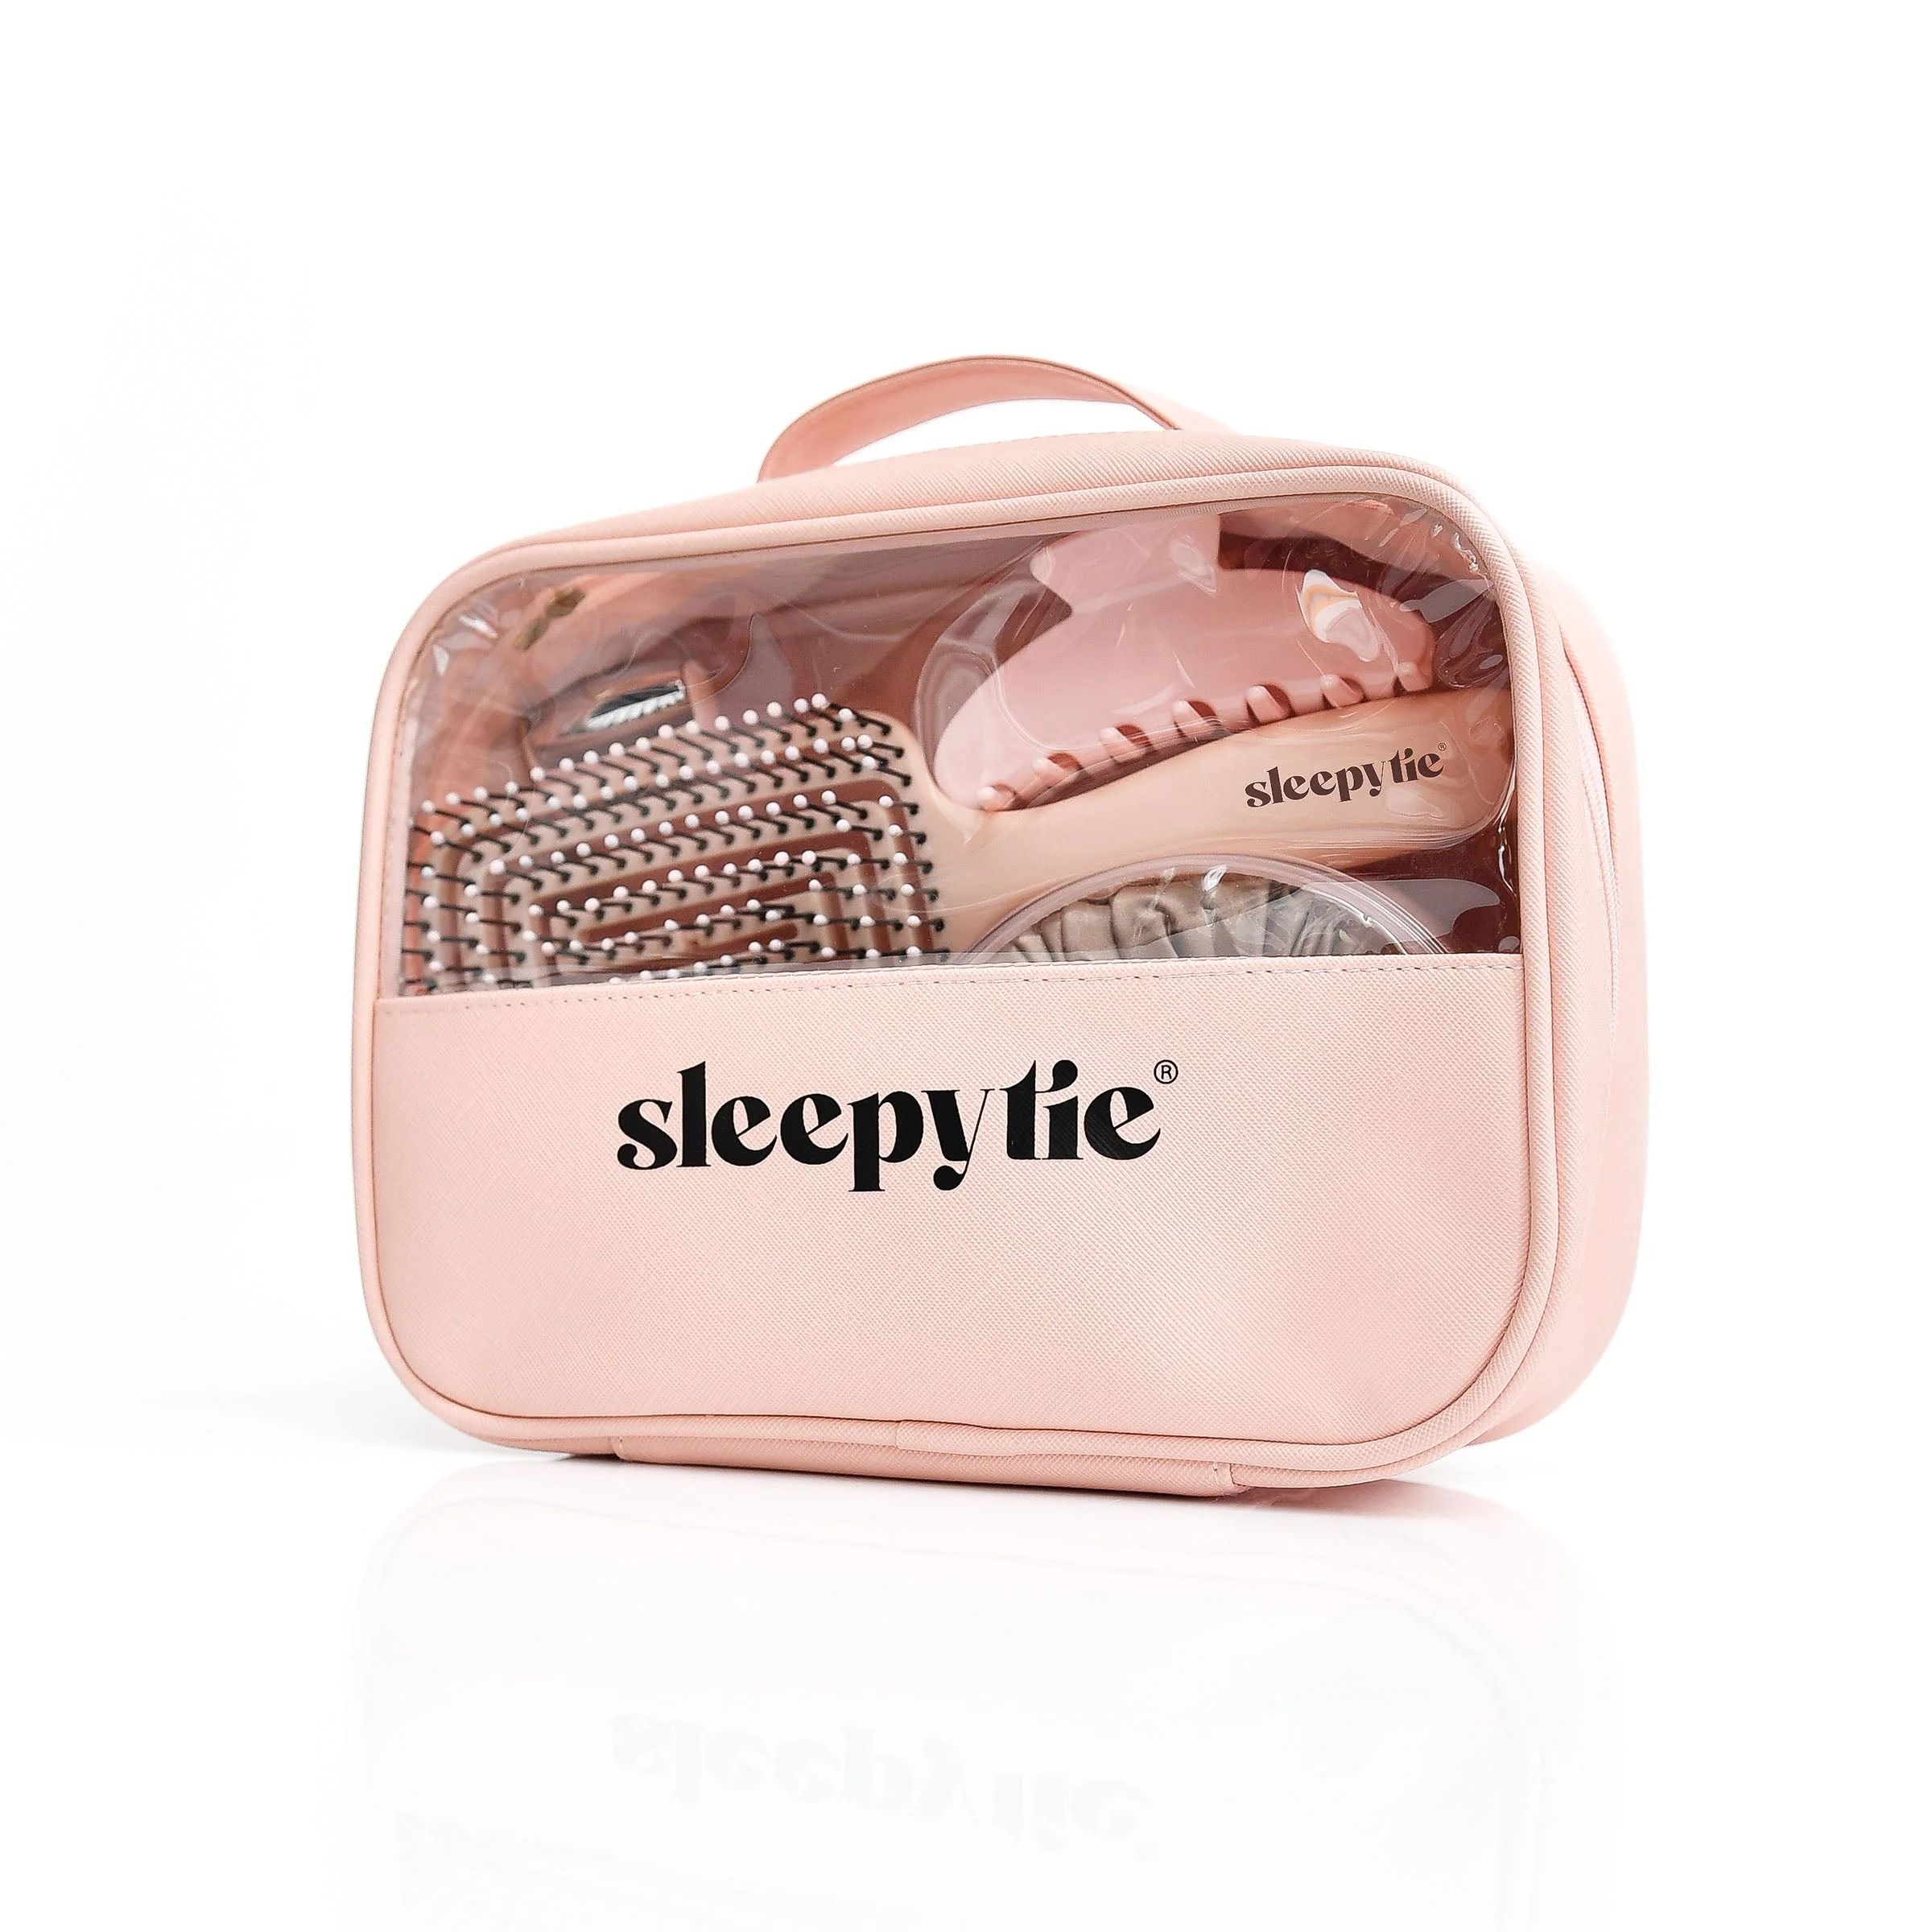 Sleepy Tie® Self-Care Set | Sleepy Tie